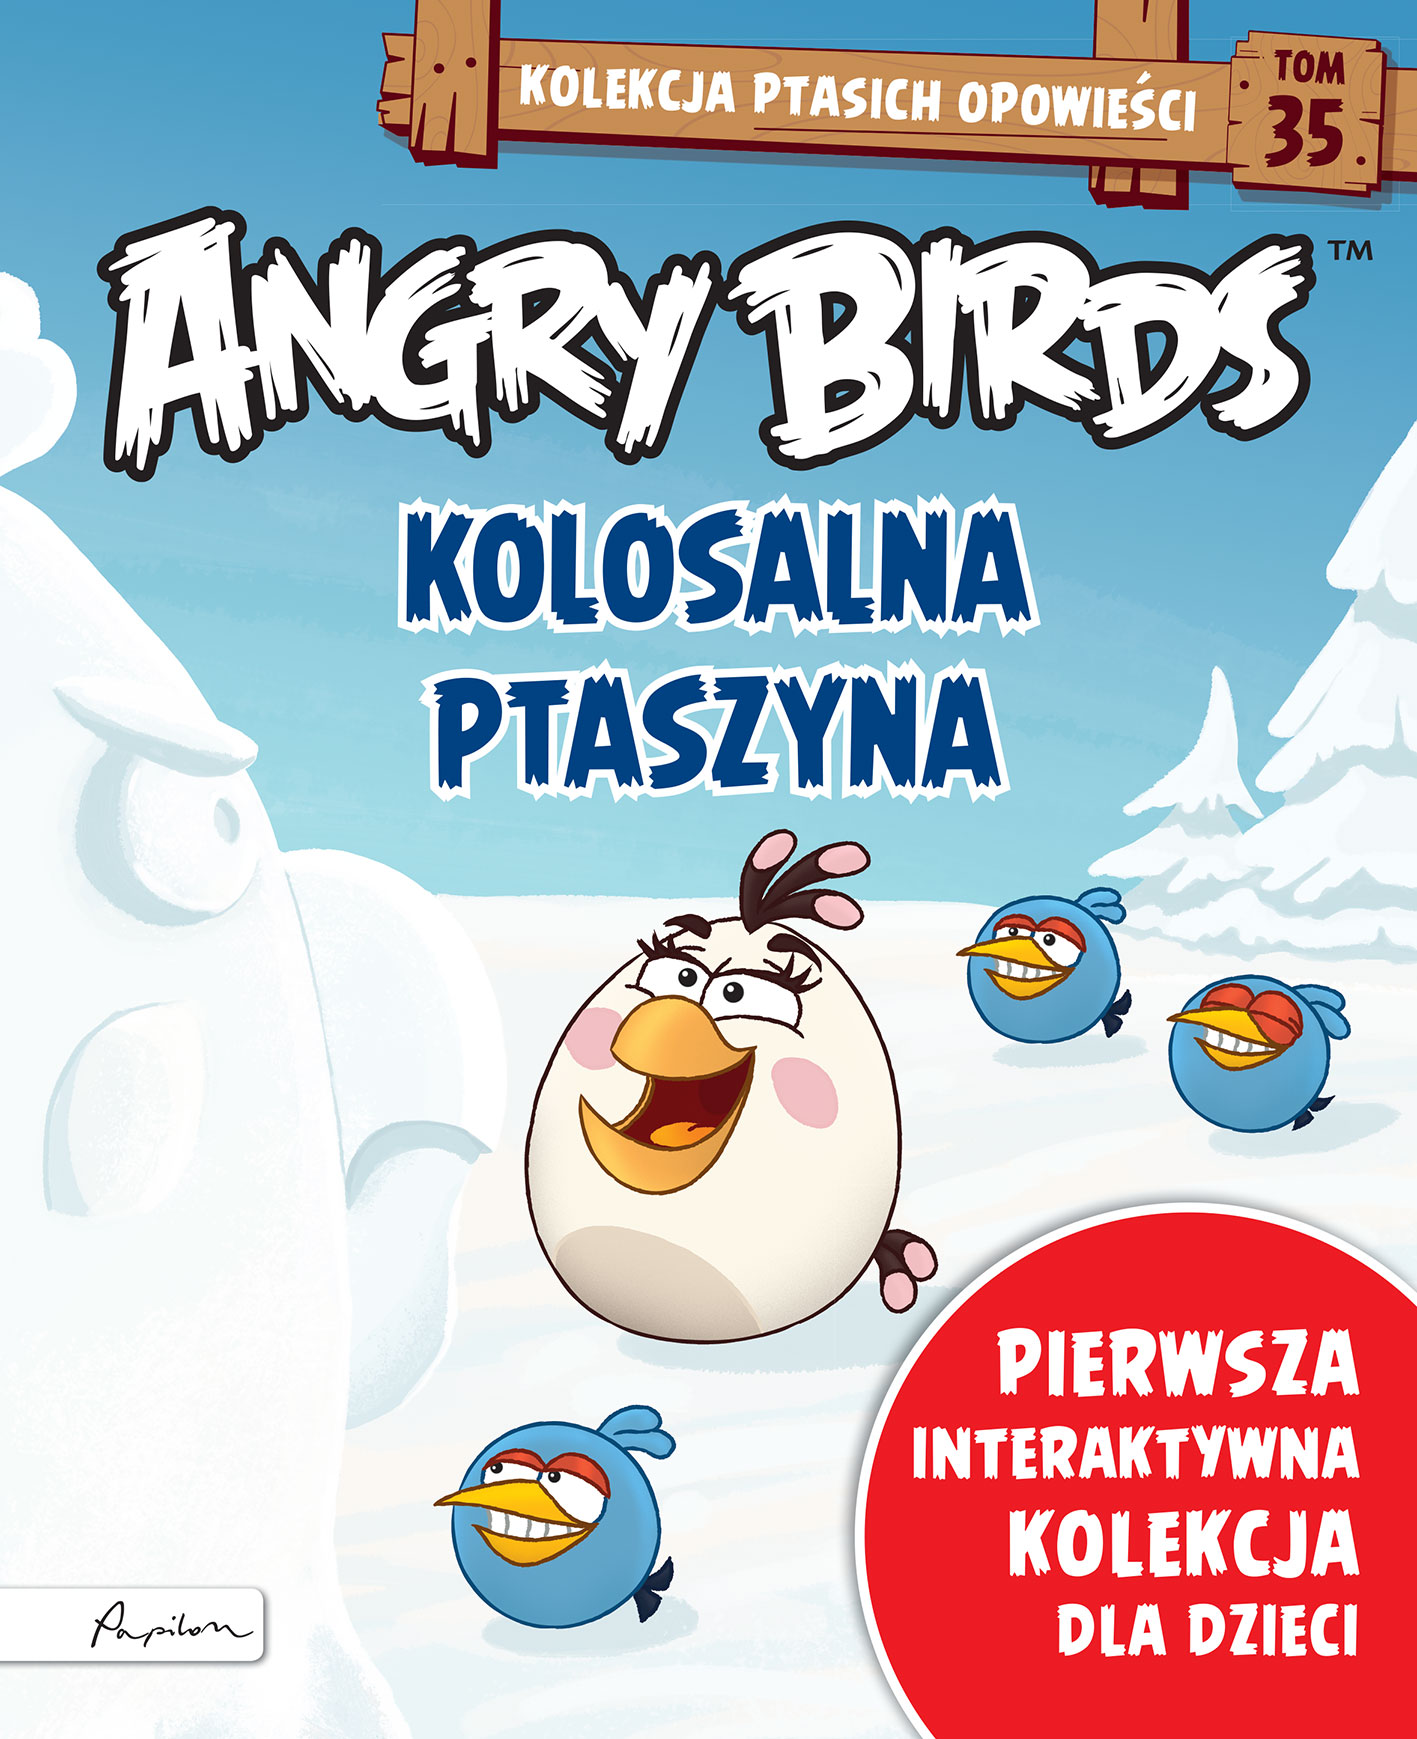 Angry Birds. Kolekcja ptasich opowieści 35. Kolosalna ptaszyna.